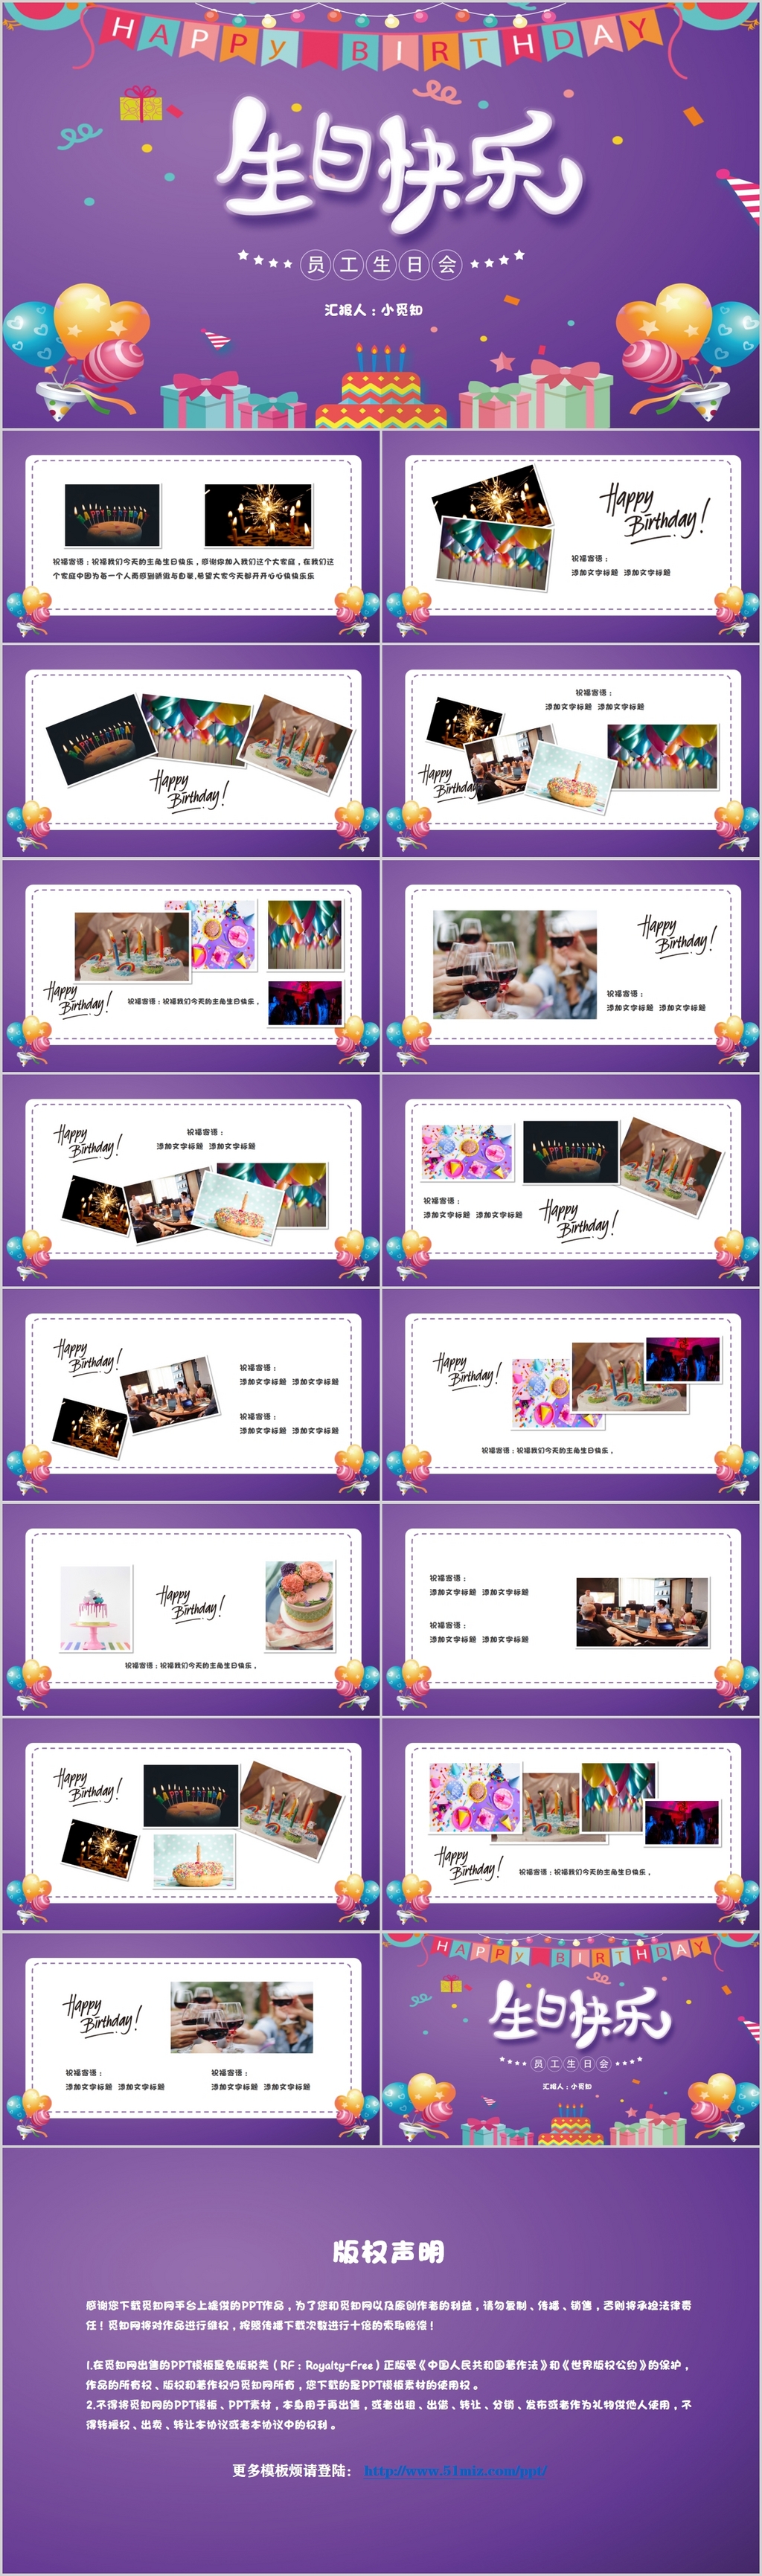 紫色公司企业员工生日会电子相册贺卡PPT模板